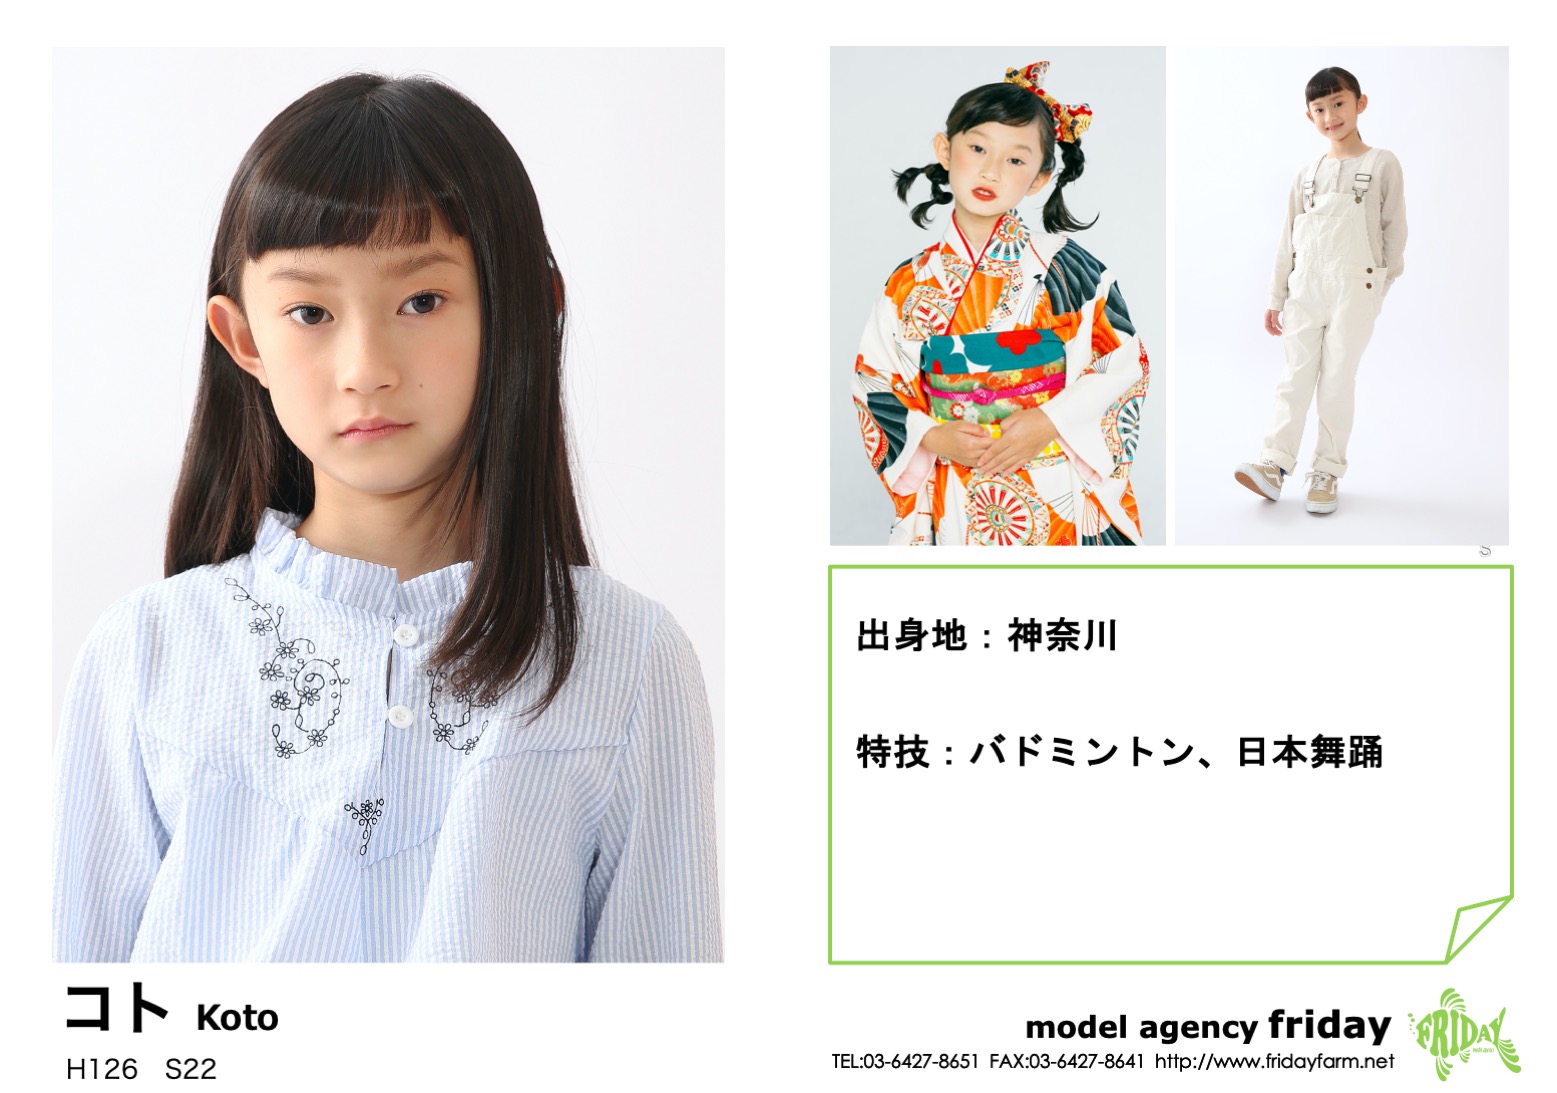 コト - Koto | model agency friday